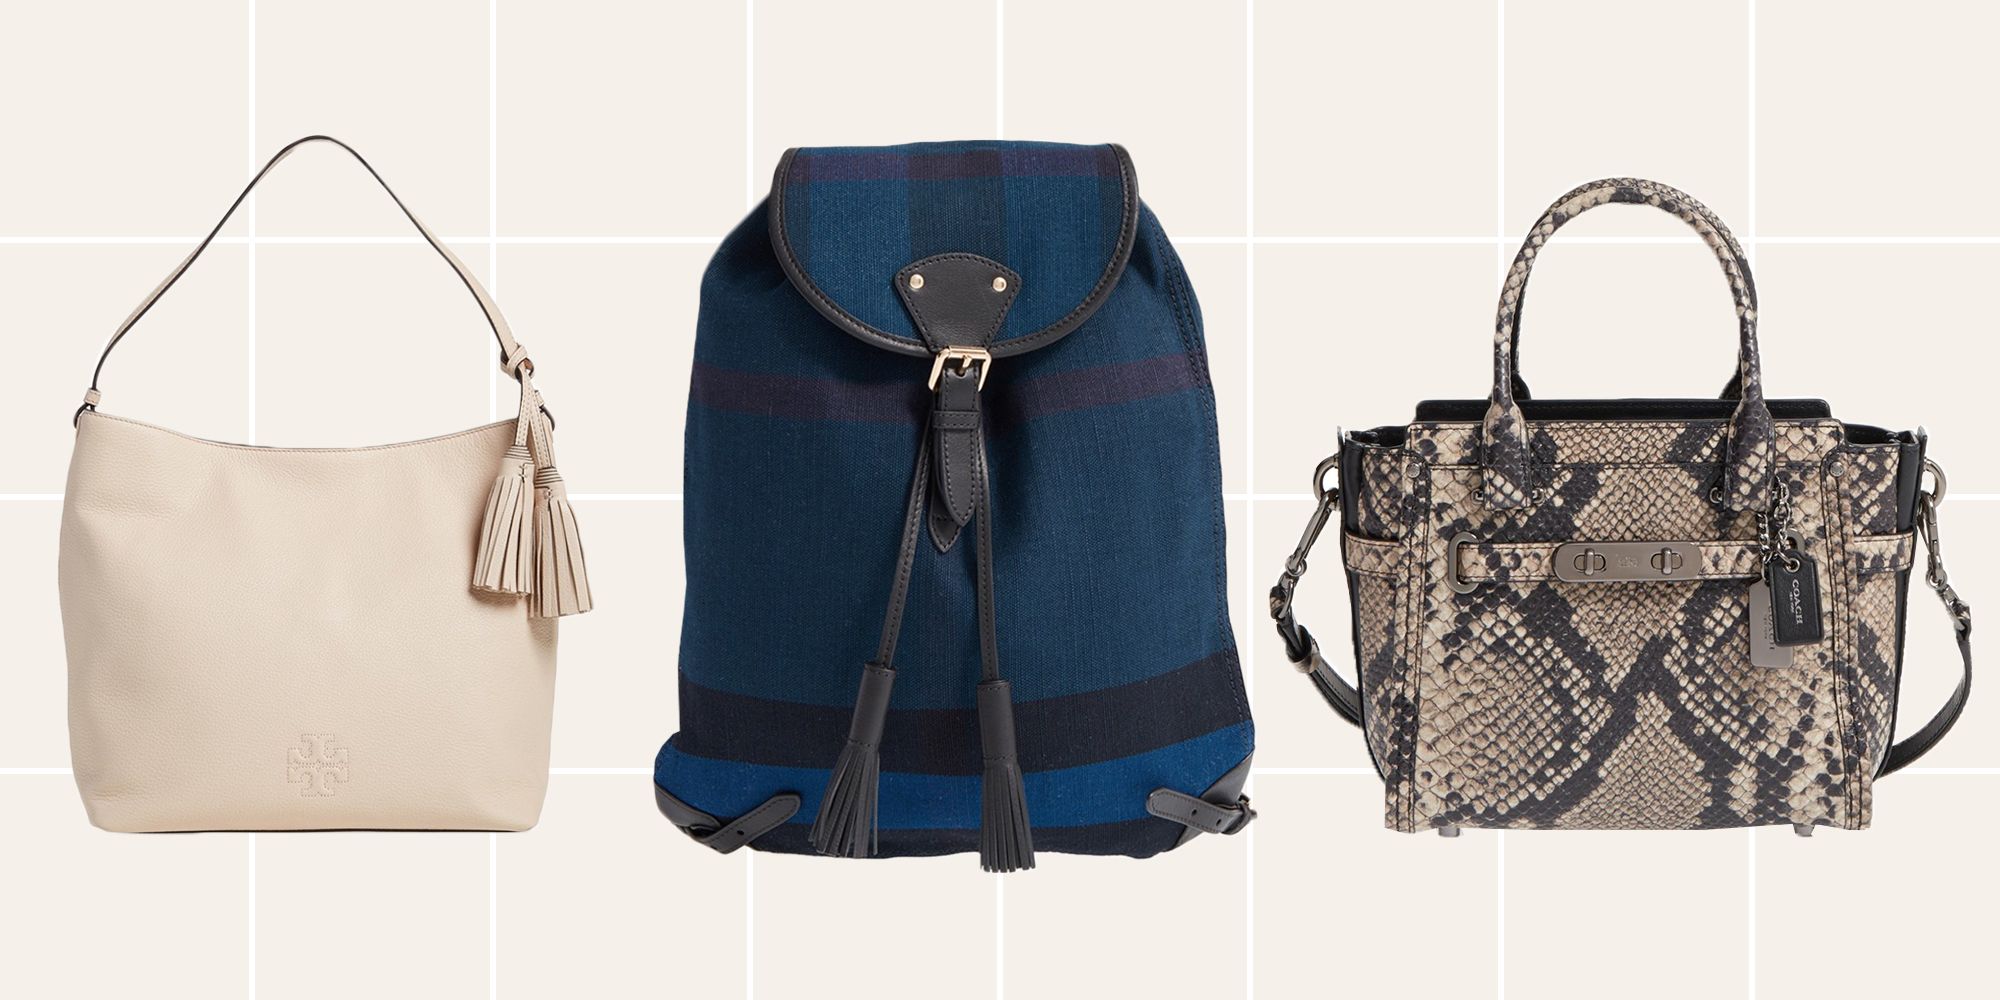 10 Best Designer Handbags On Sale Now At Nordstrom 2018